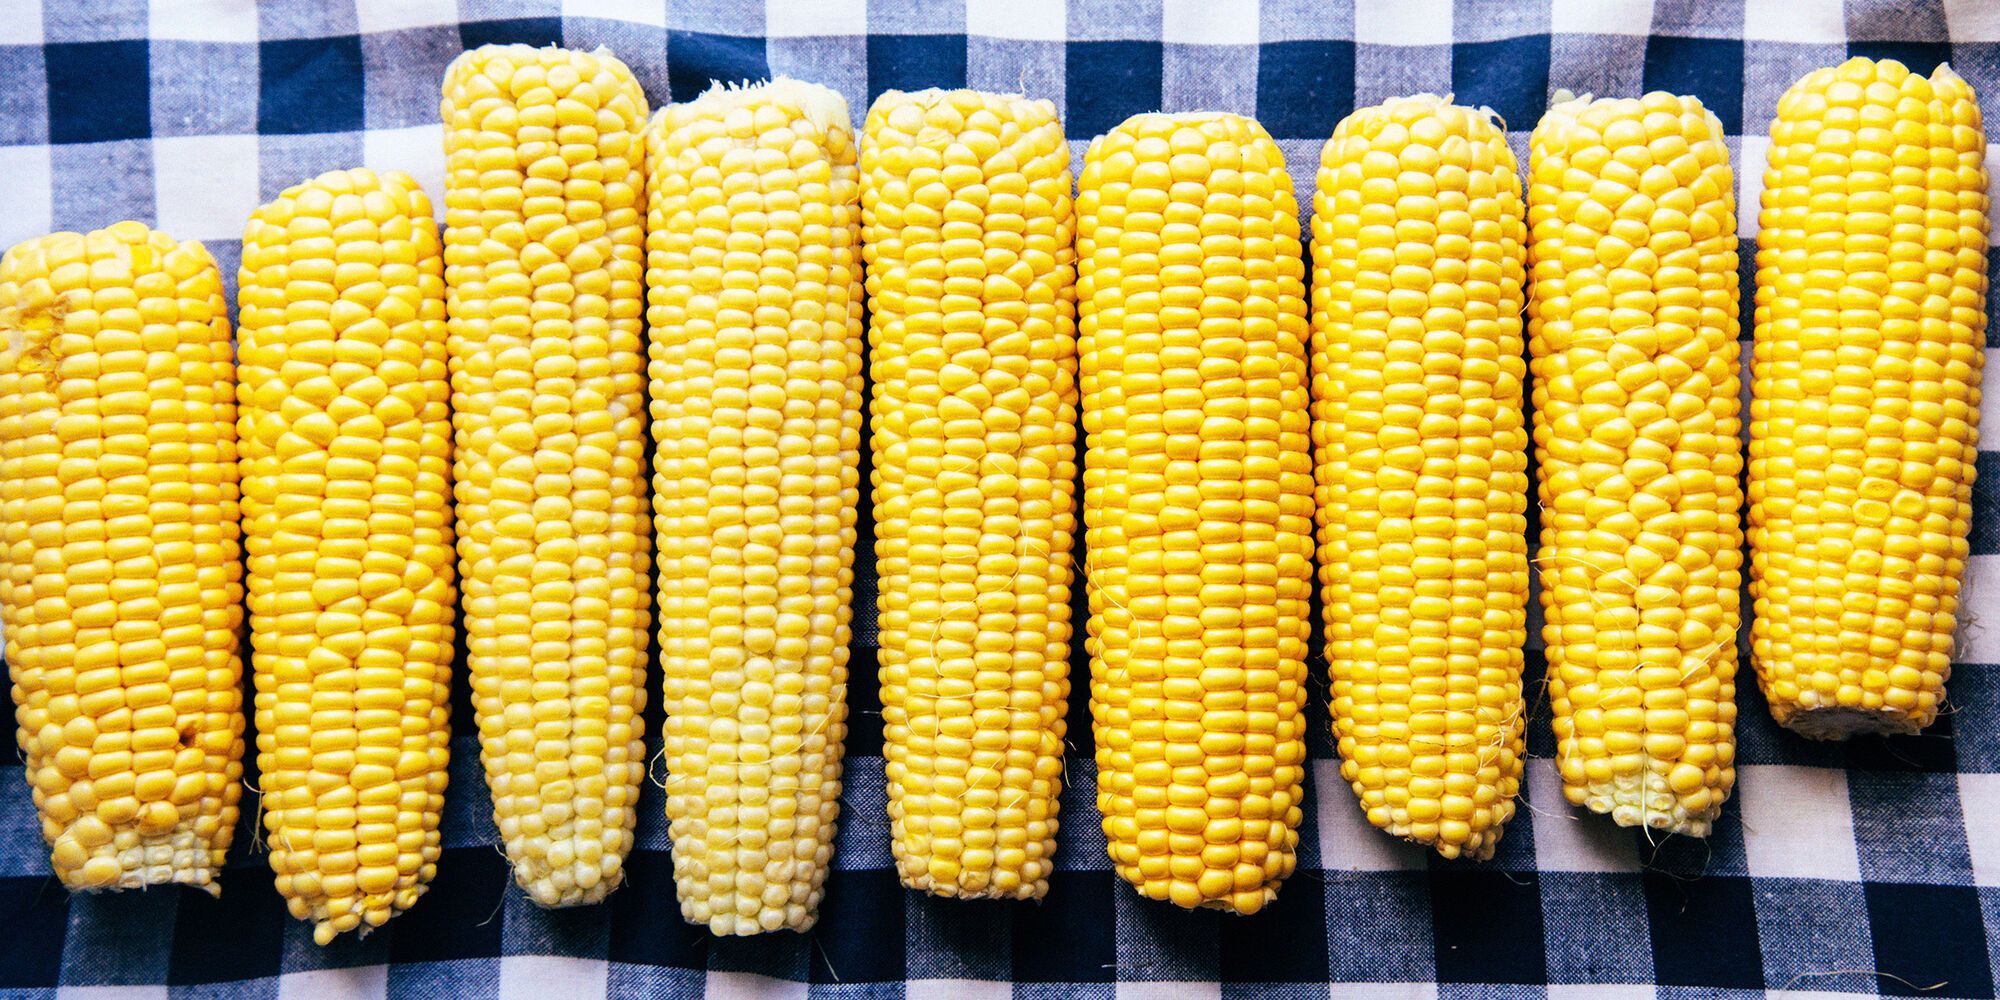 Як правильно обрати кукурудзу